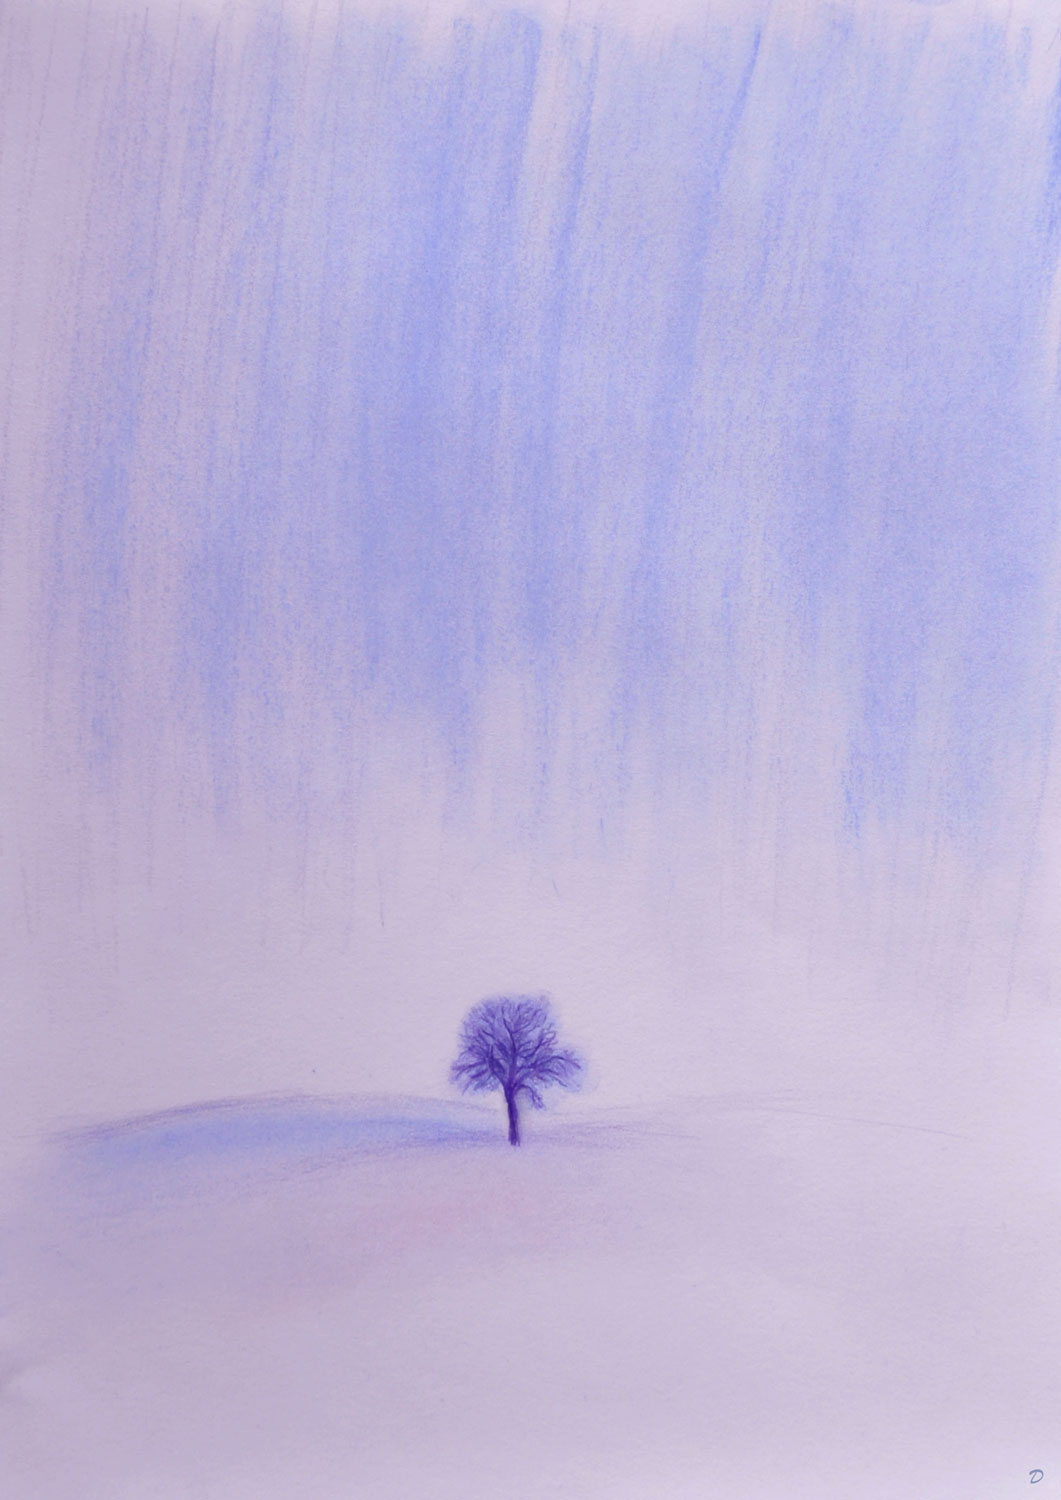 Arbre en hiver, Penthalaz, 1. Crayon de couleur et pastel sur papier, 42x30, 2022